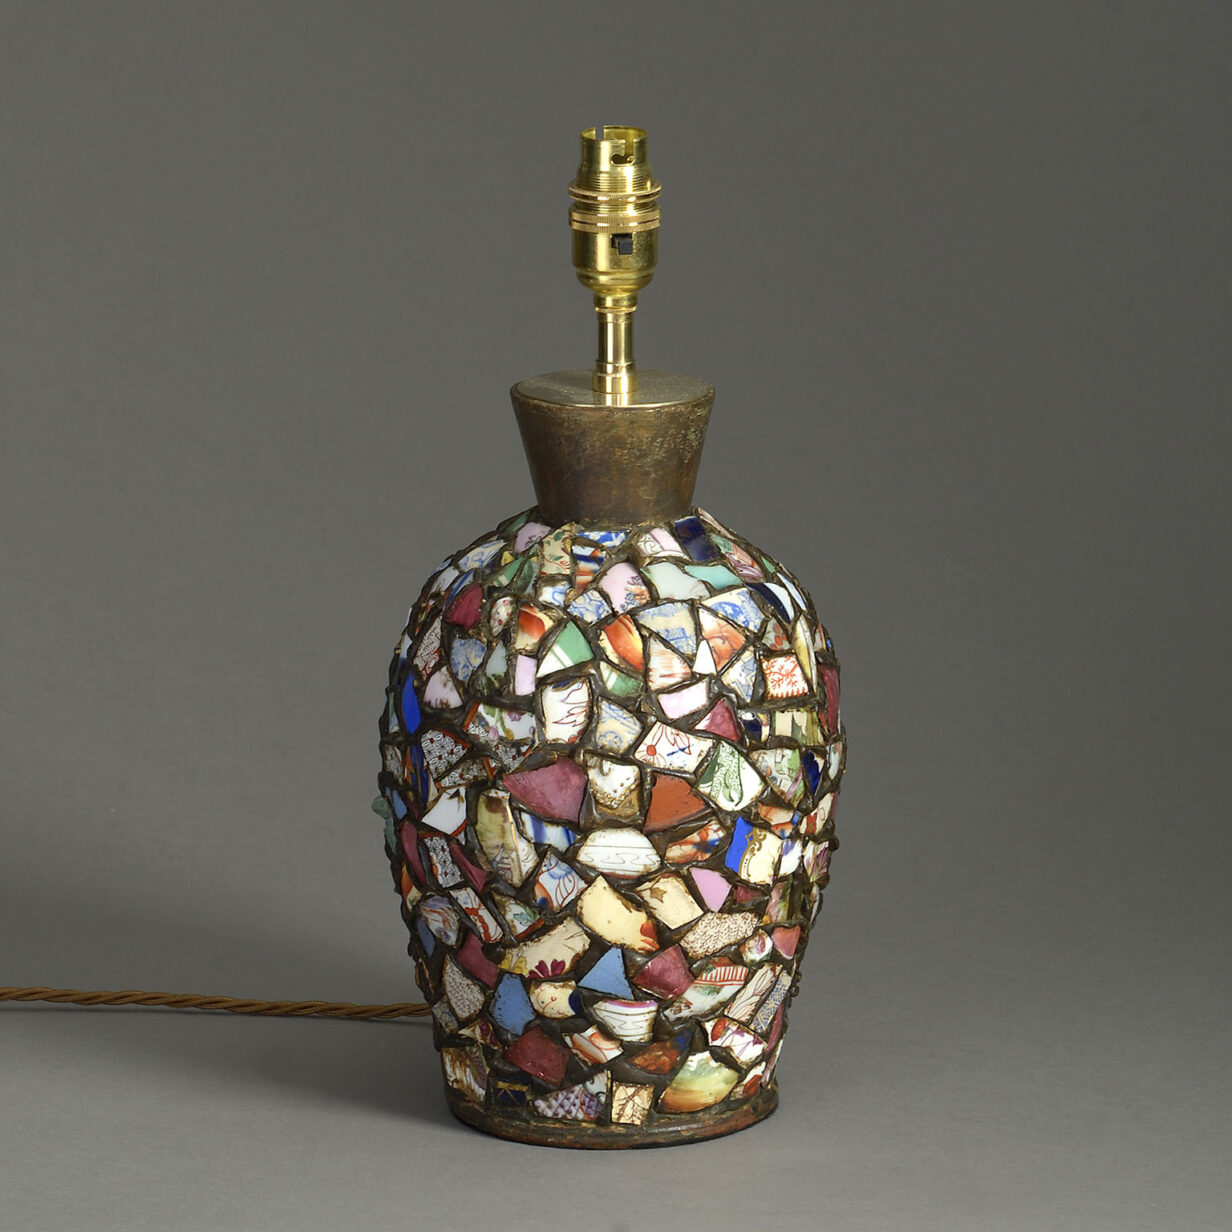 An unusual ceramic collage lamp